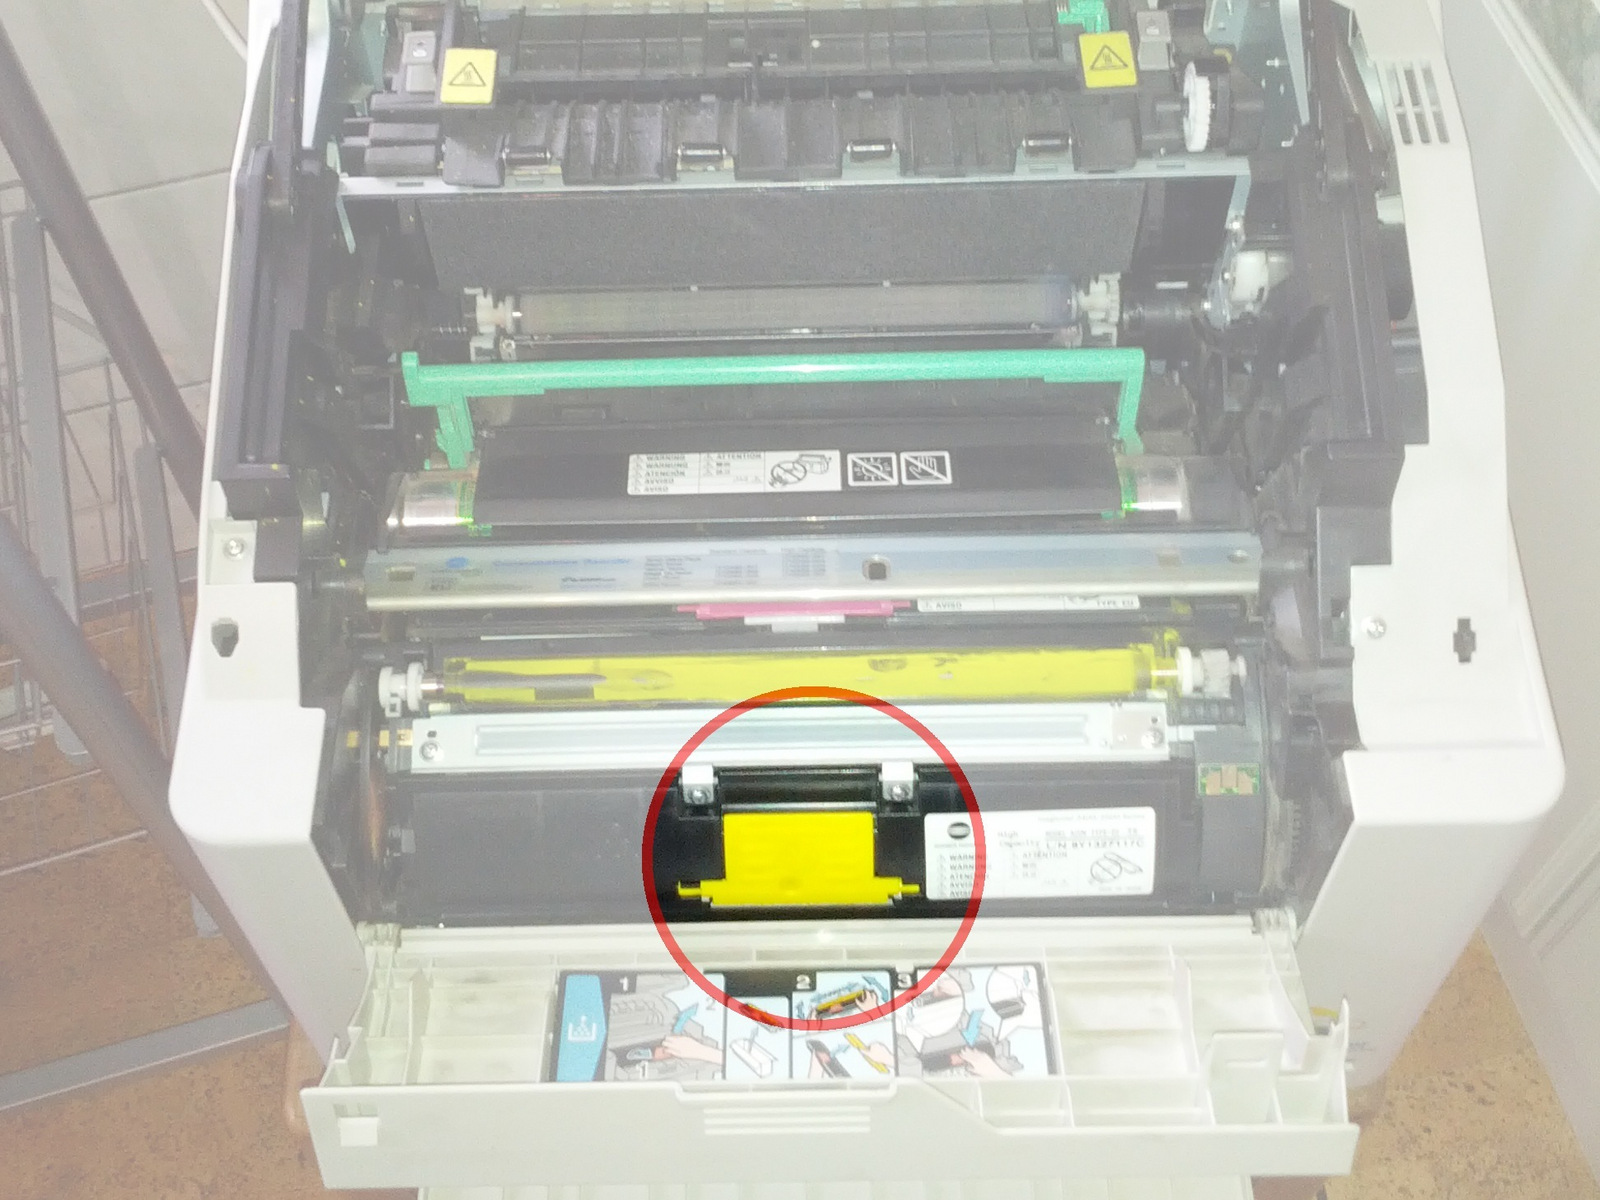 Stap 1 Het herstellen van Konica Minolta 2430DL Toner Detection Error Power down en ontkoppel printer voordat u de volgende instructies.